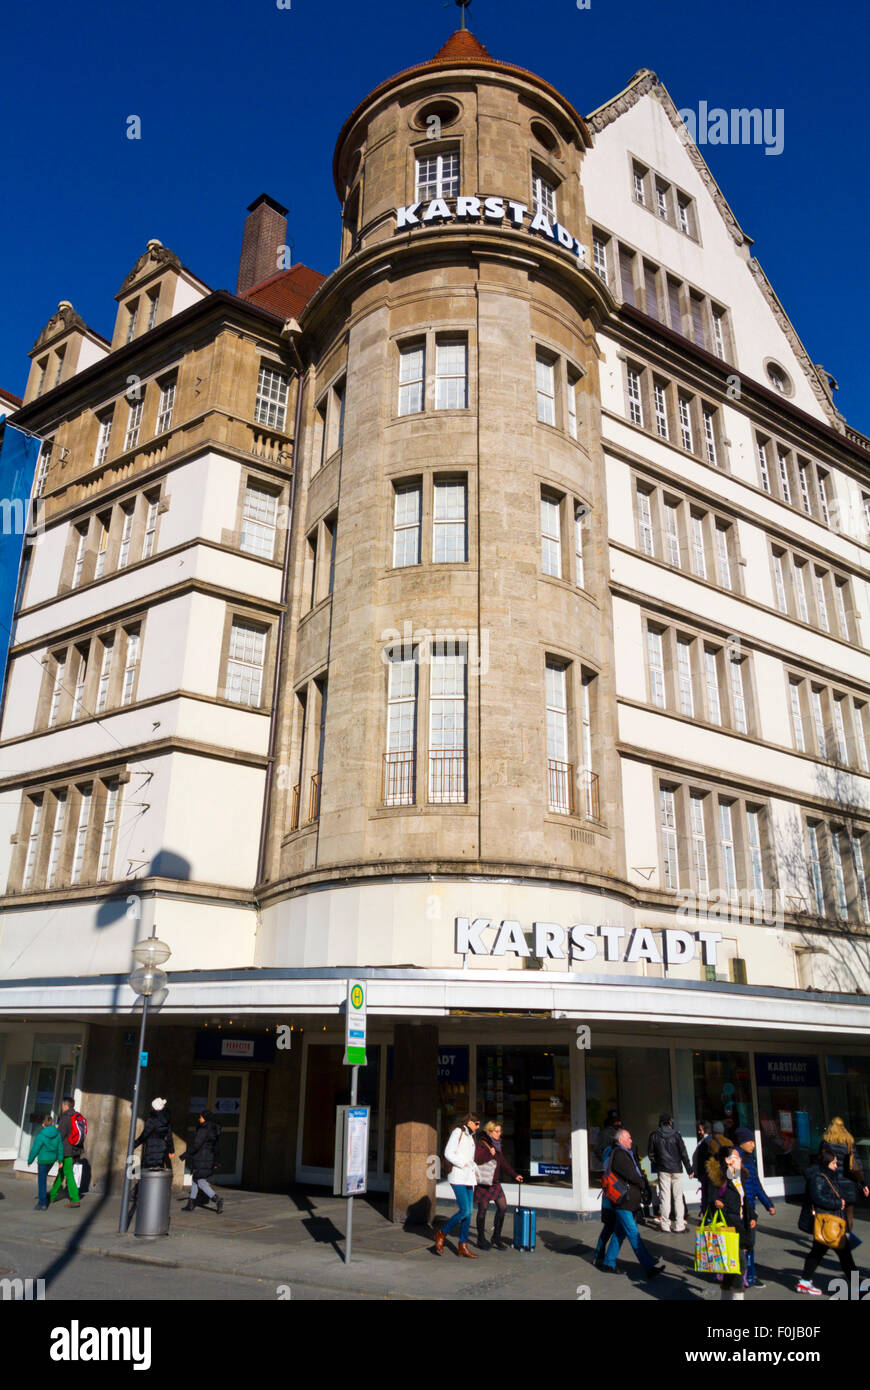 Karstadt, department store, Karlsplatz, Munich, Bavaria, Germany Stock Photo